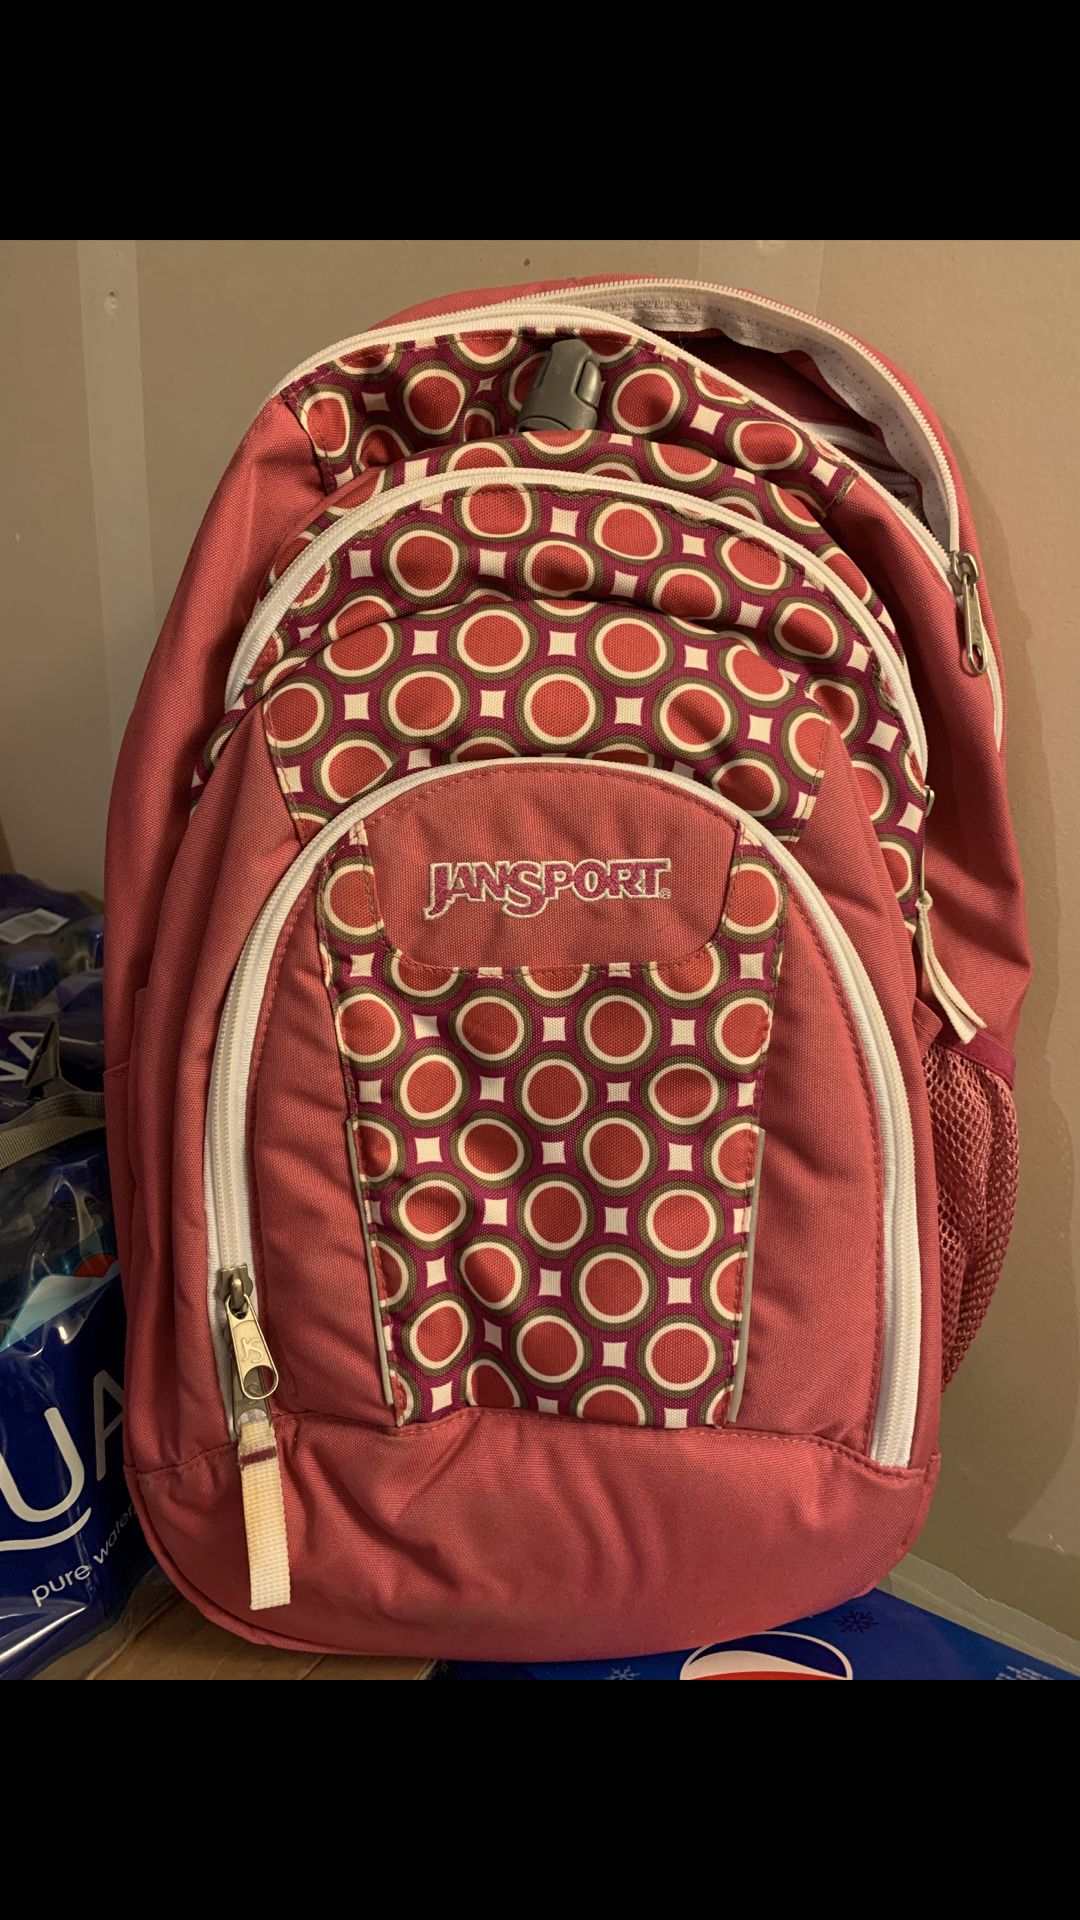 Jansport backpack $6